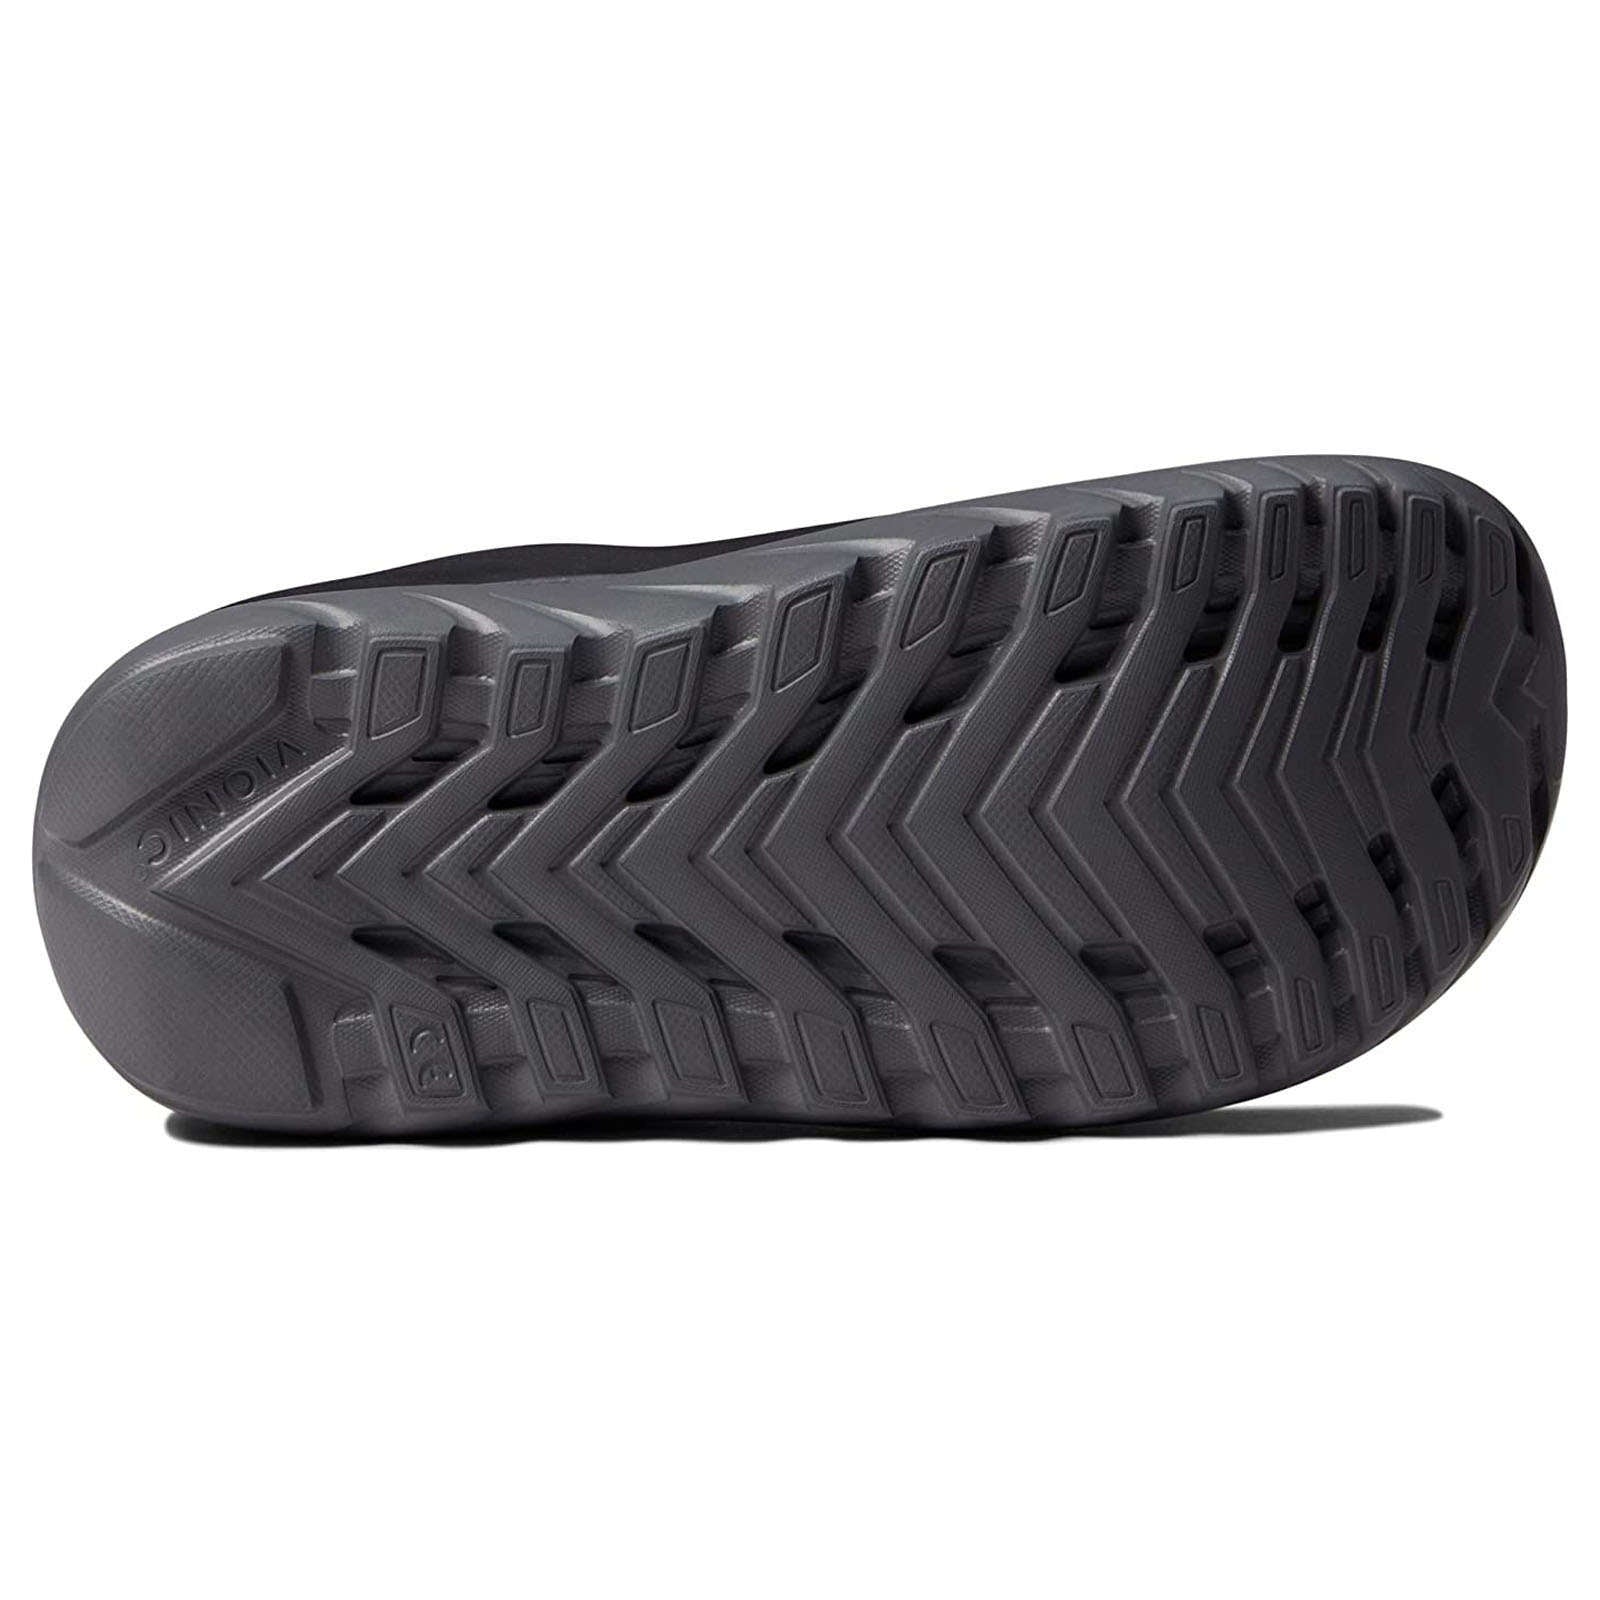 Vionic Restore Leather Unisex Sandals#color_black charcoal